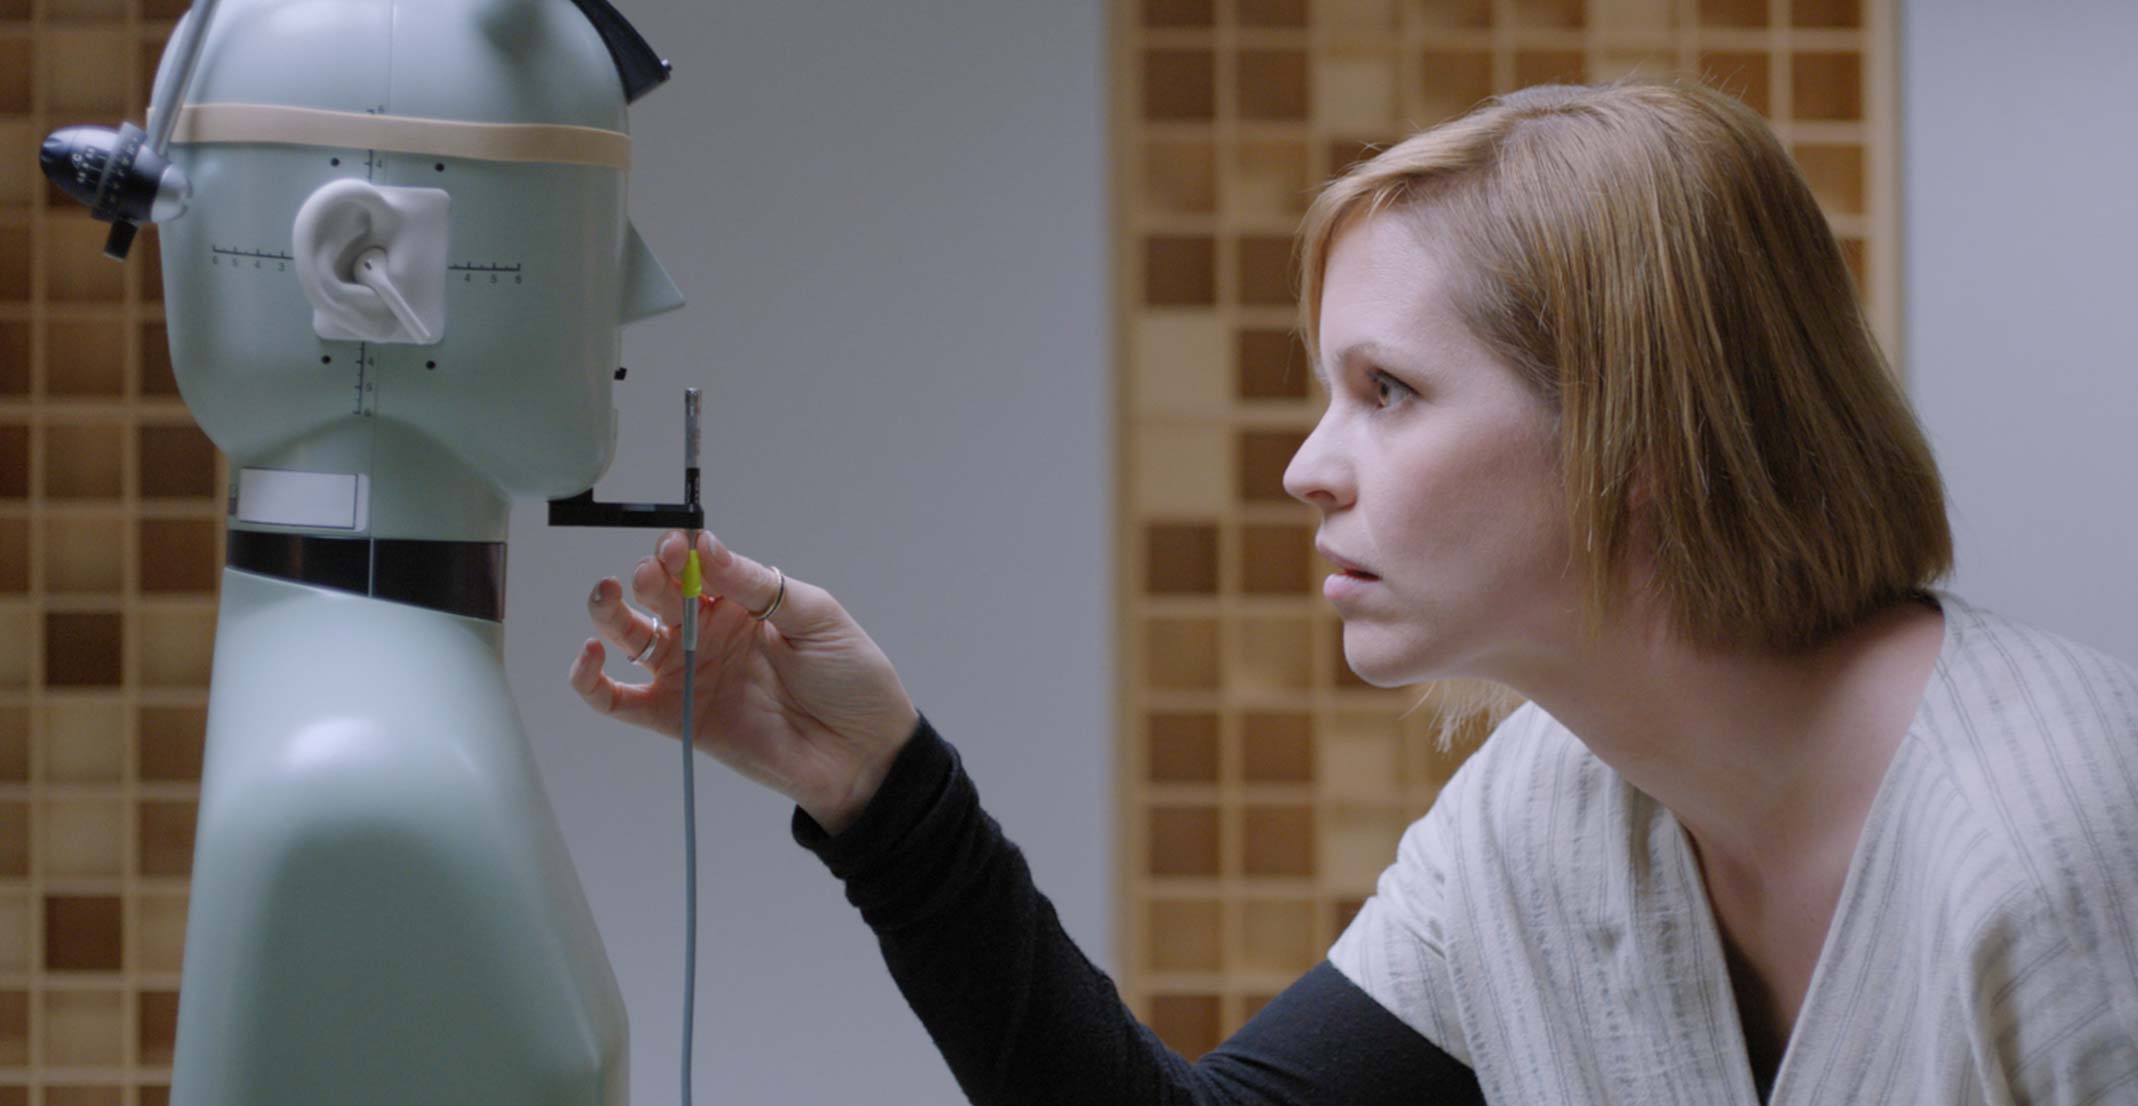 Suzie, responsable del equipo de creación de prototipos acústicos de Apple, ajusta un micrófono frente a un maniquí en un laboratorio de ingeniería en Cupertino.